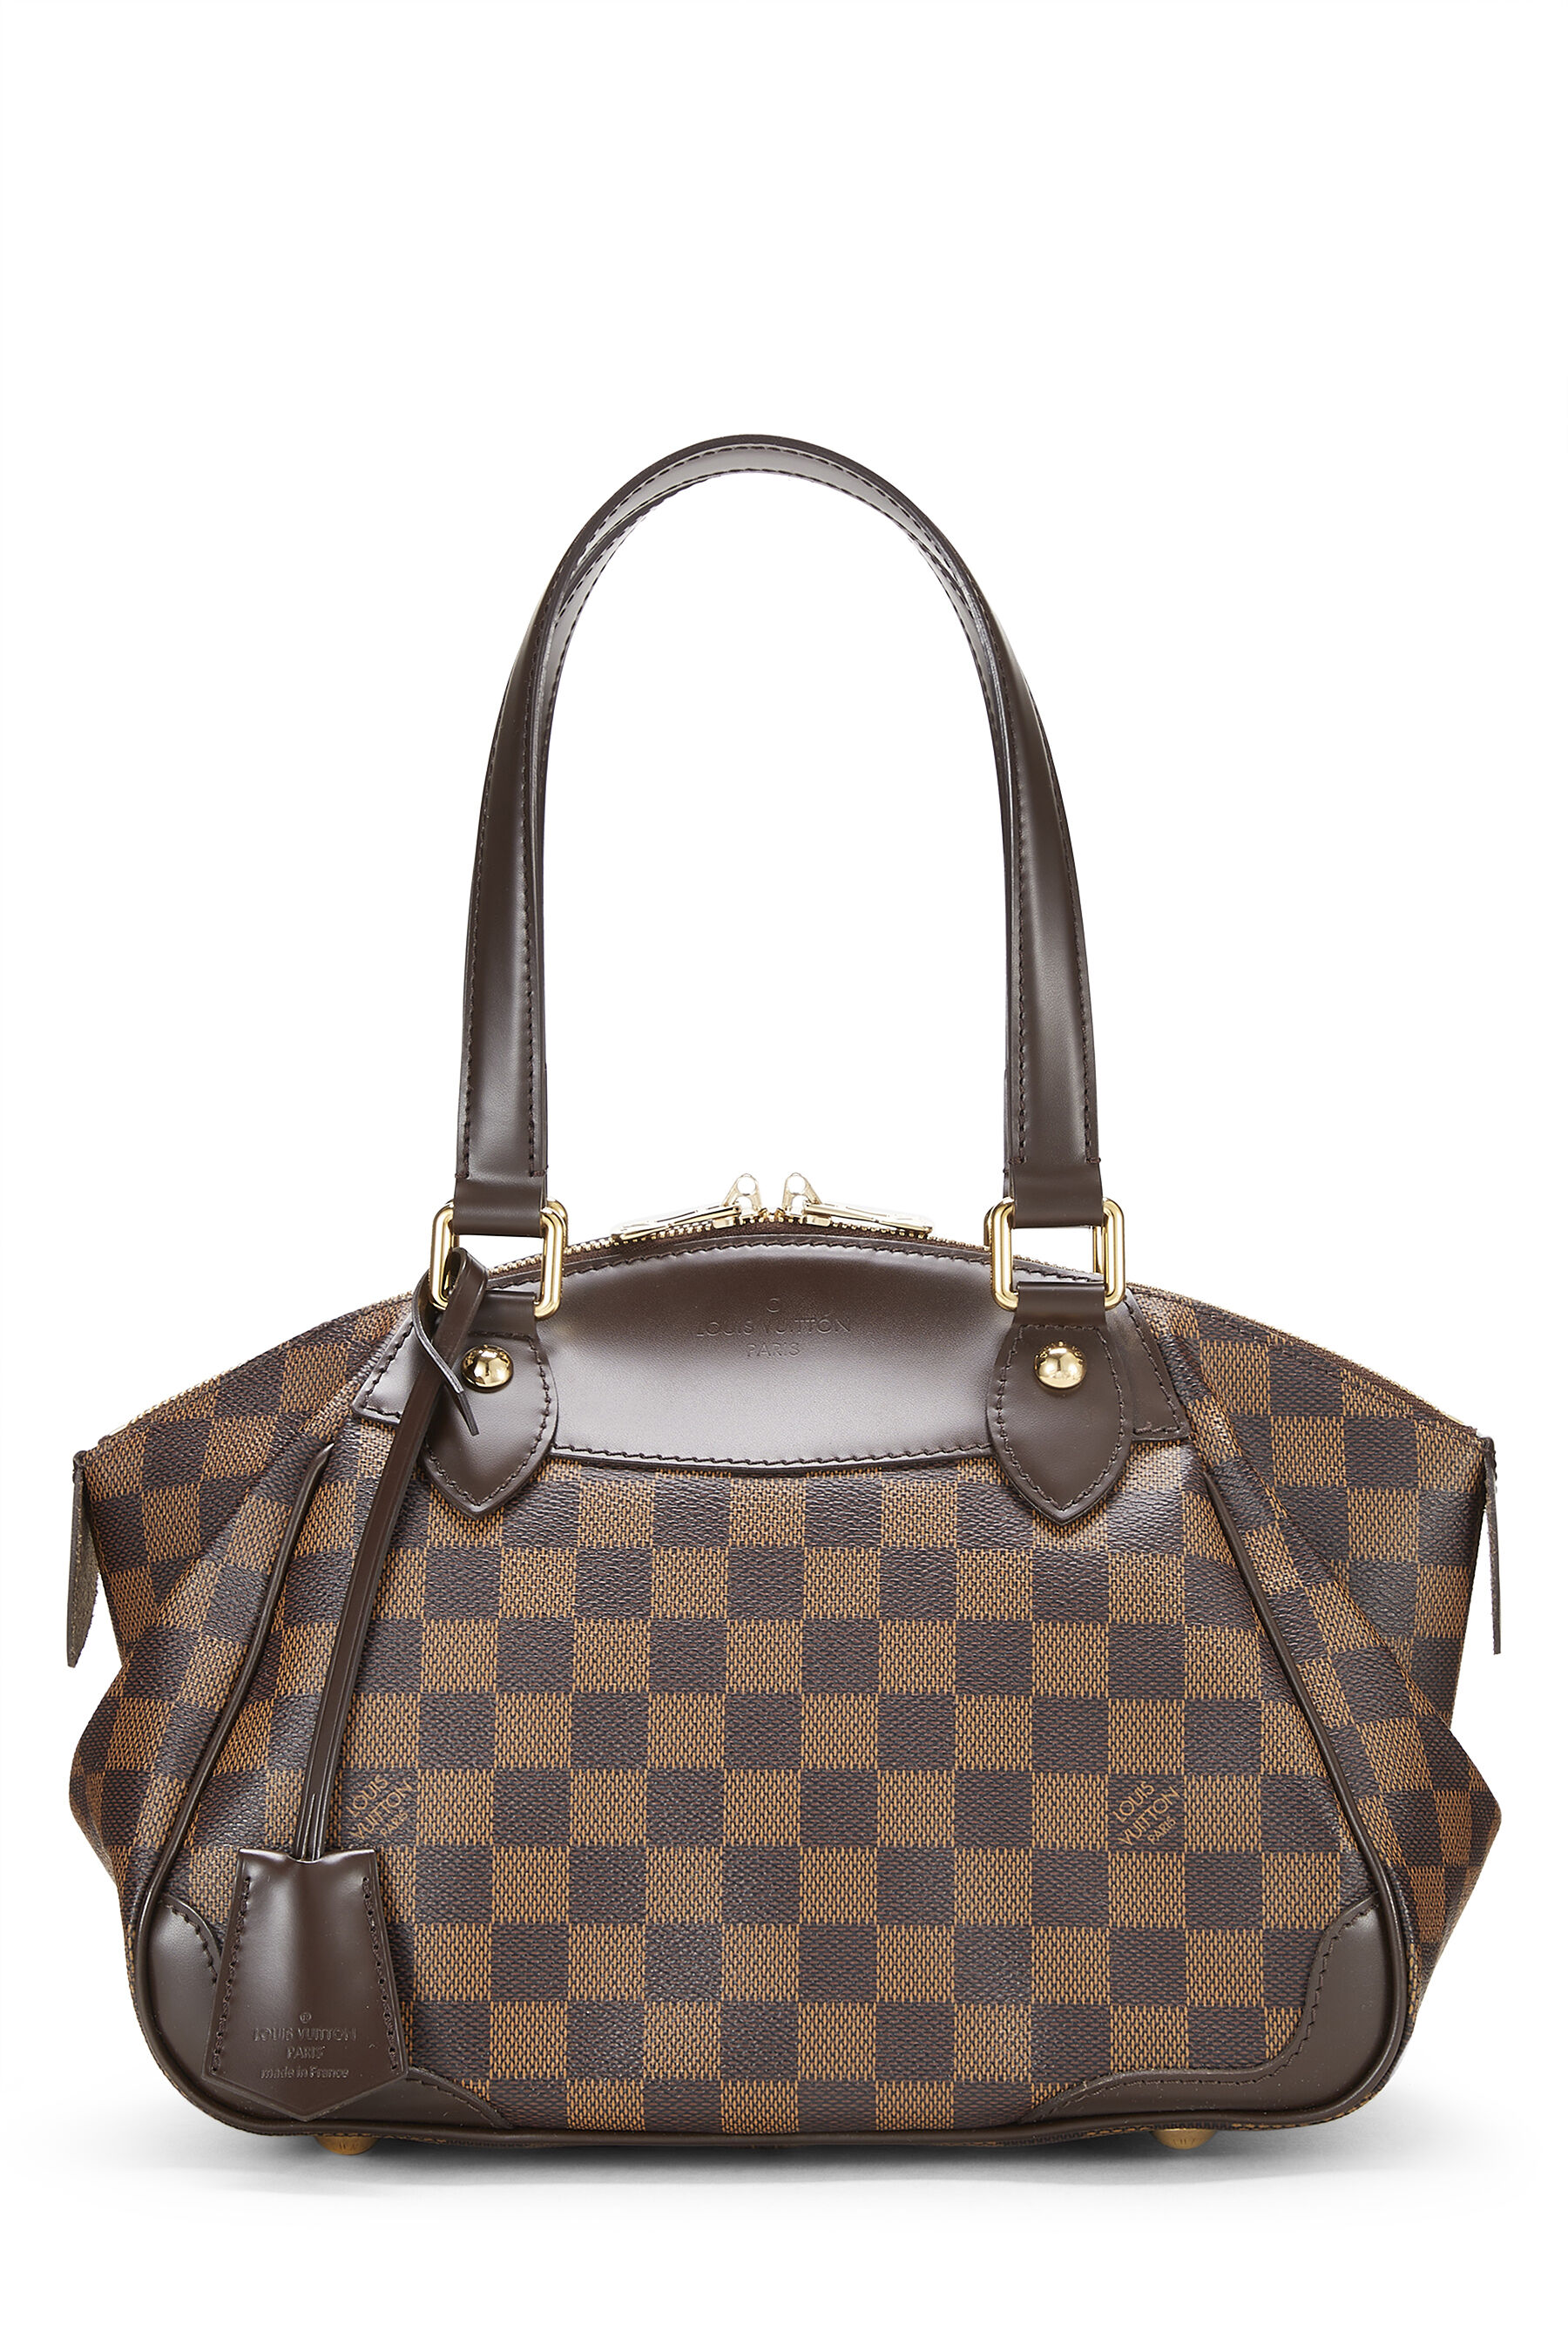 Louis Vuitton Verona PM Damier Ebene Canvas Handbag